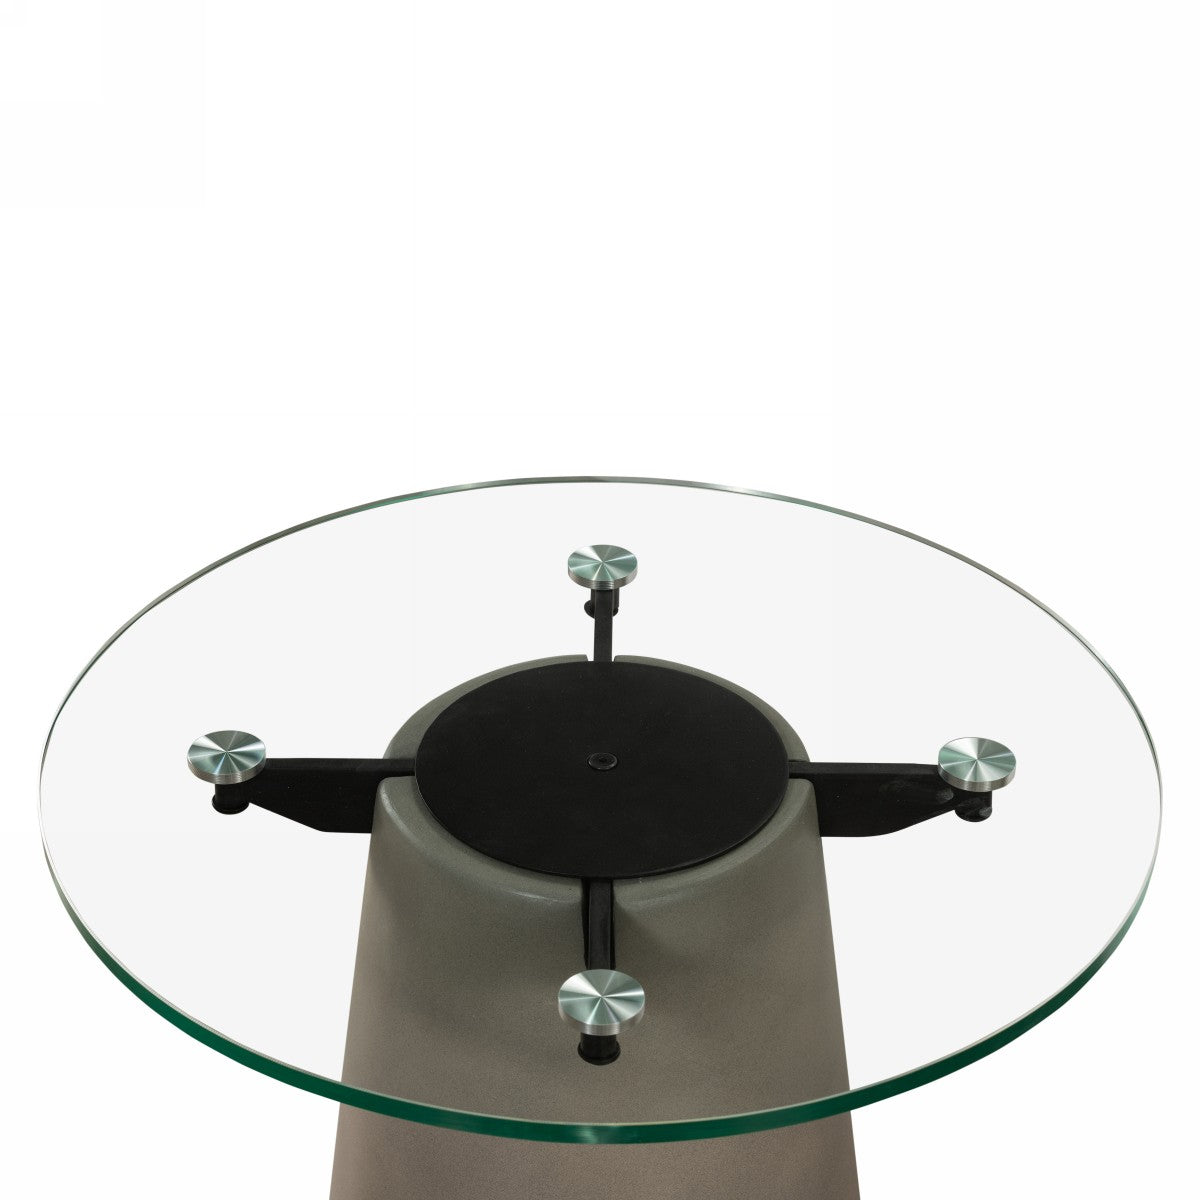 Nova Domus Essex - Contemporary Concrete, Metal and Glass Coffee Table